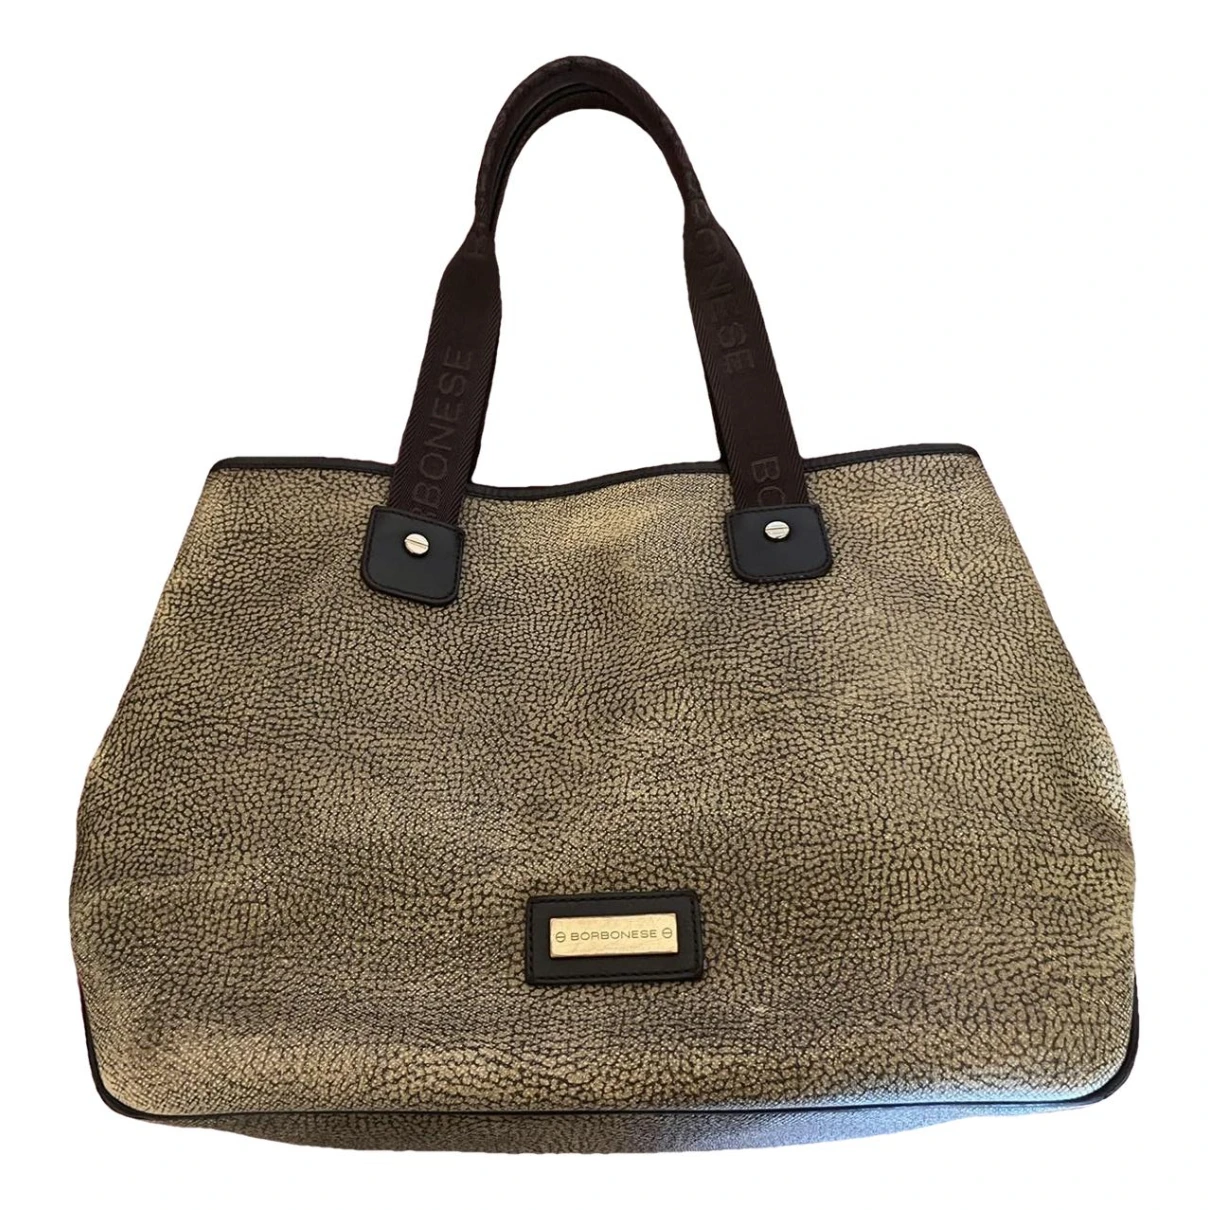 Pre-owned Borbonese Vegan Leather Handbag In Brown